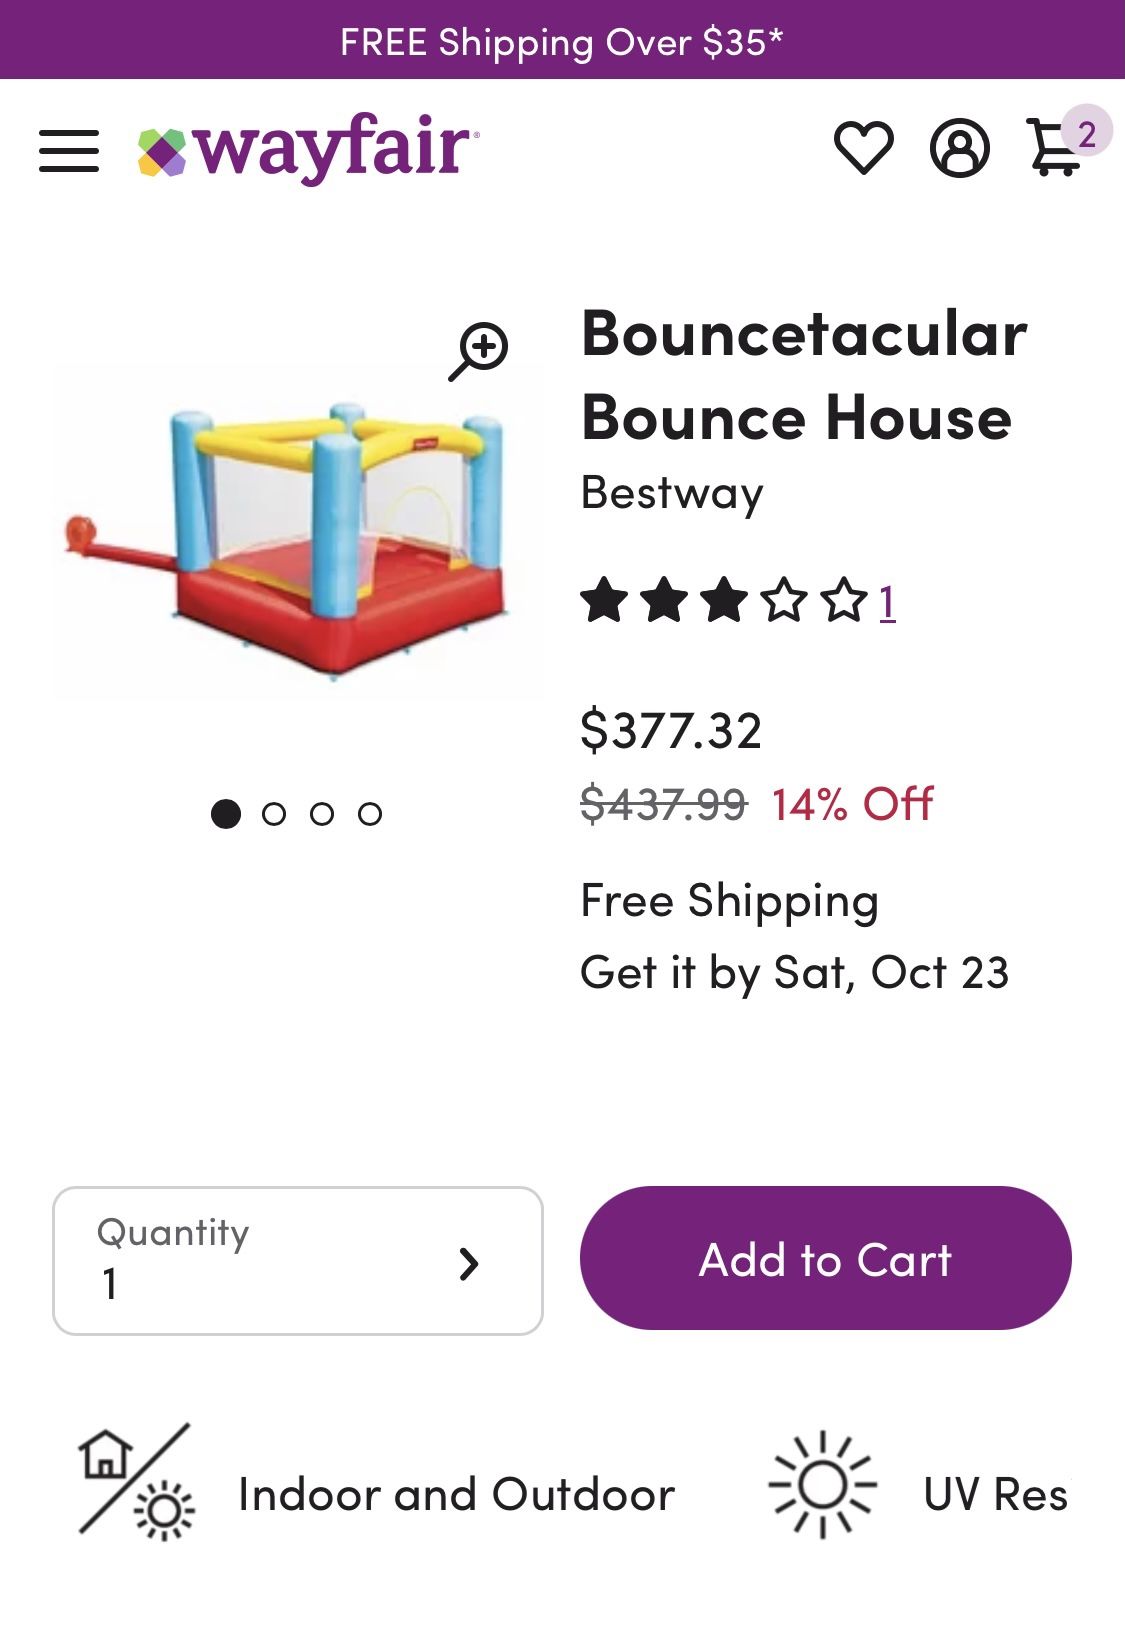 Fisher price Bouncetacular bouncer